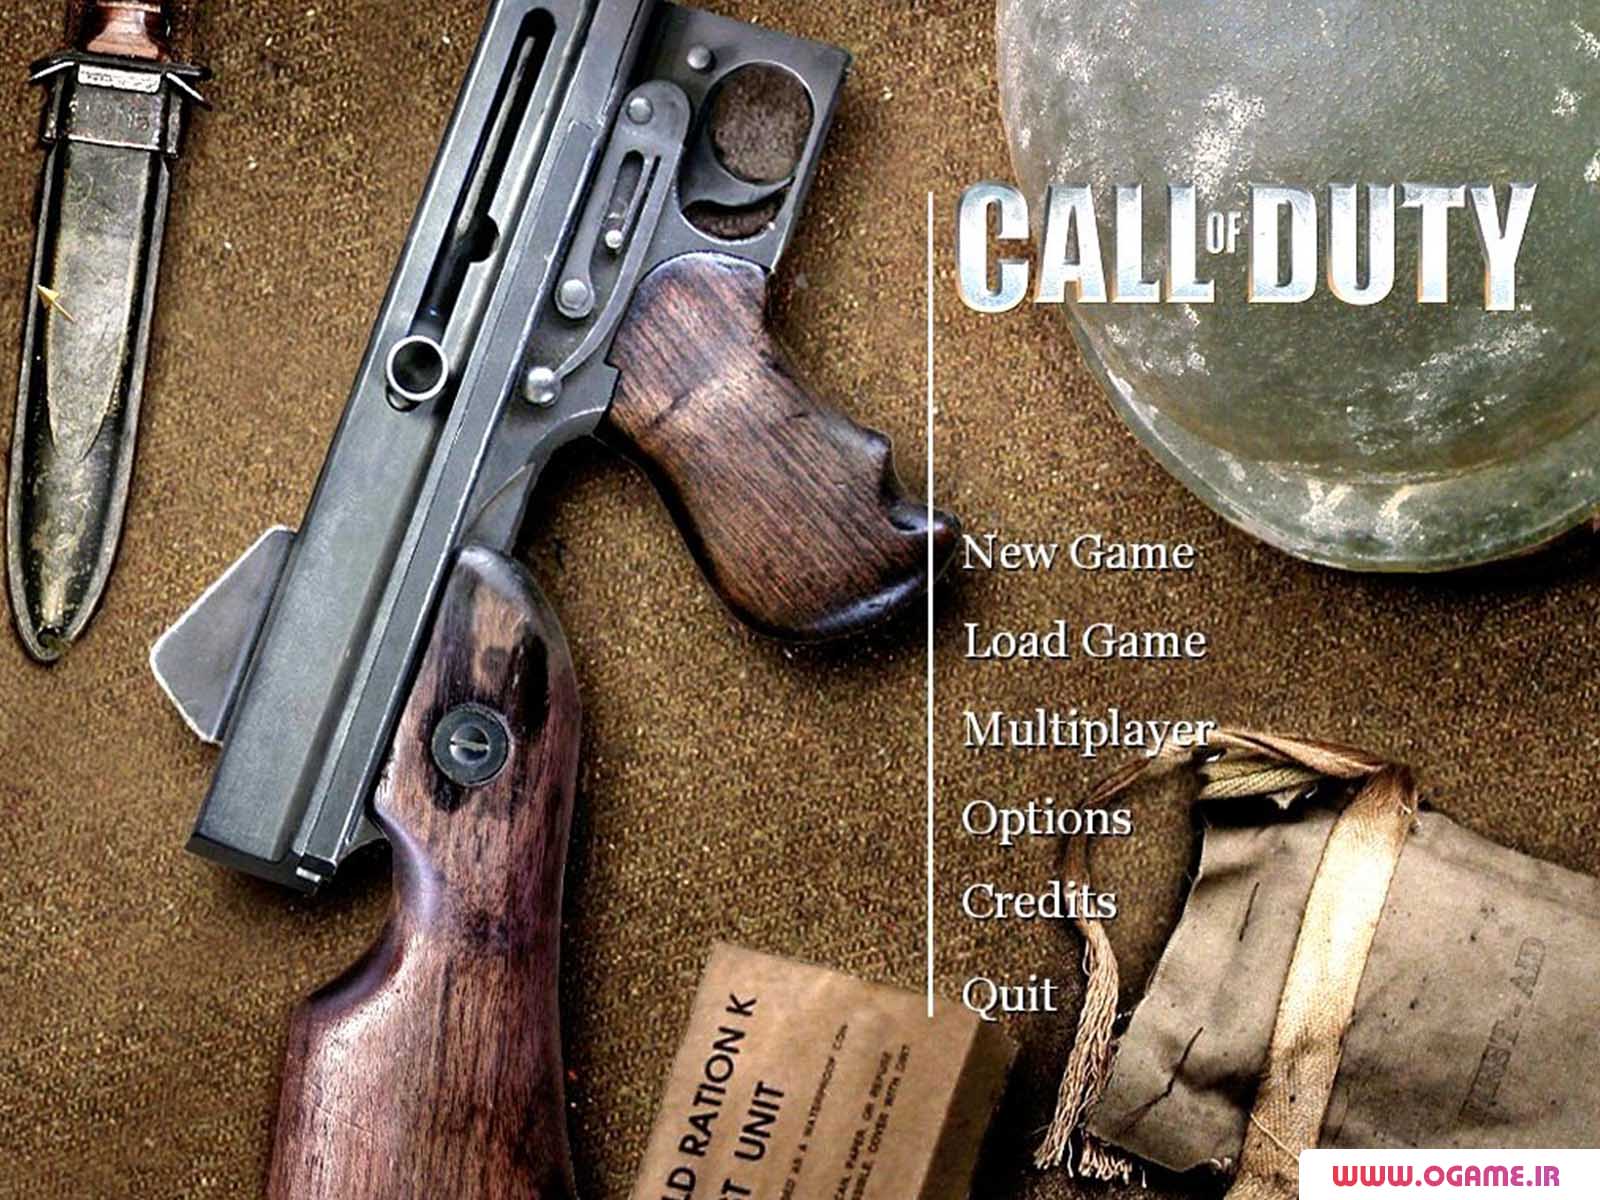  دانلود بازی ندای وظیفه 1 (Call of Duty) نسخه کامل